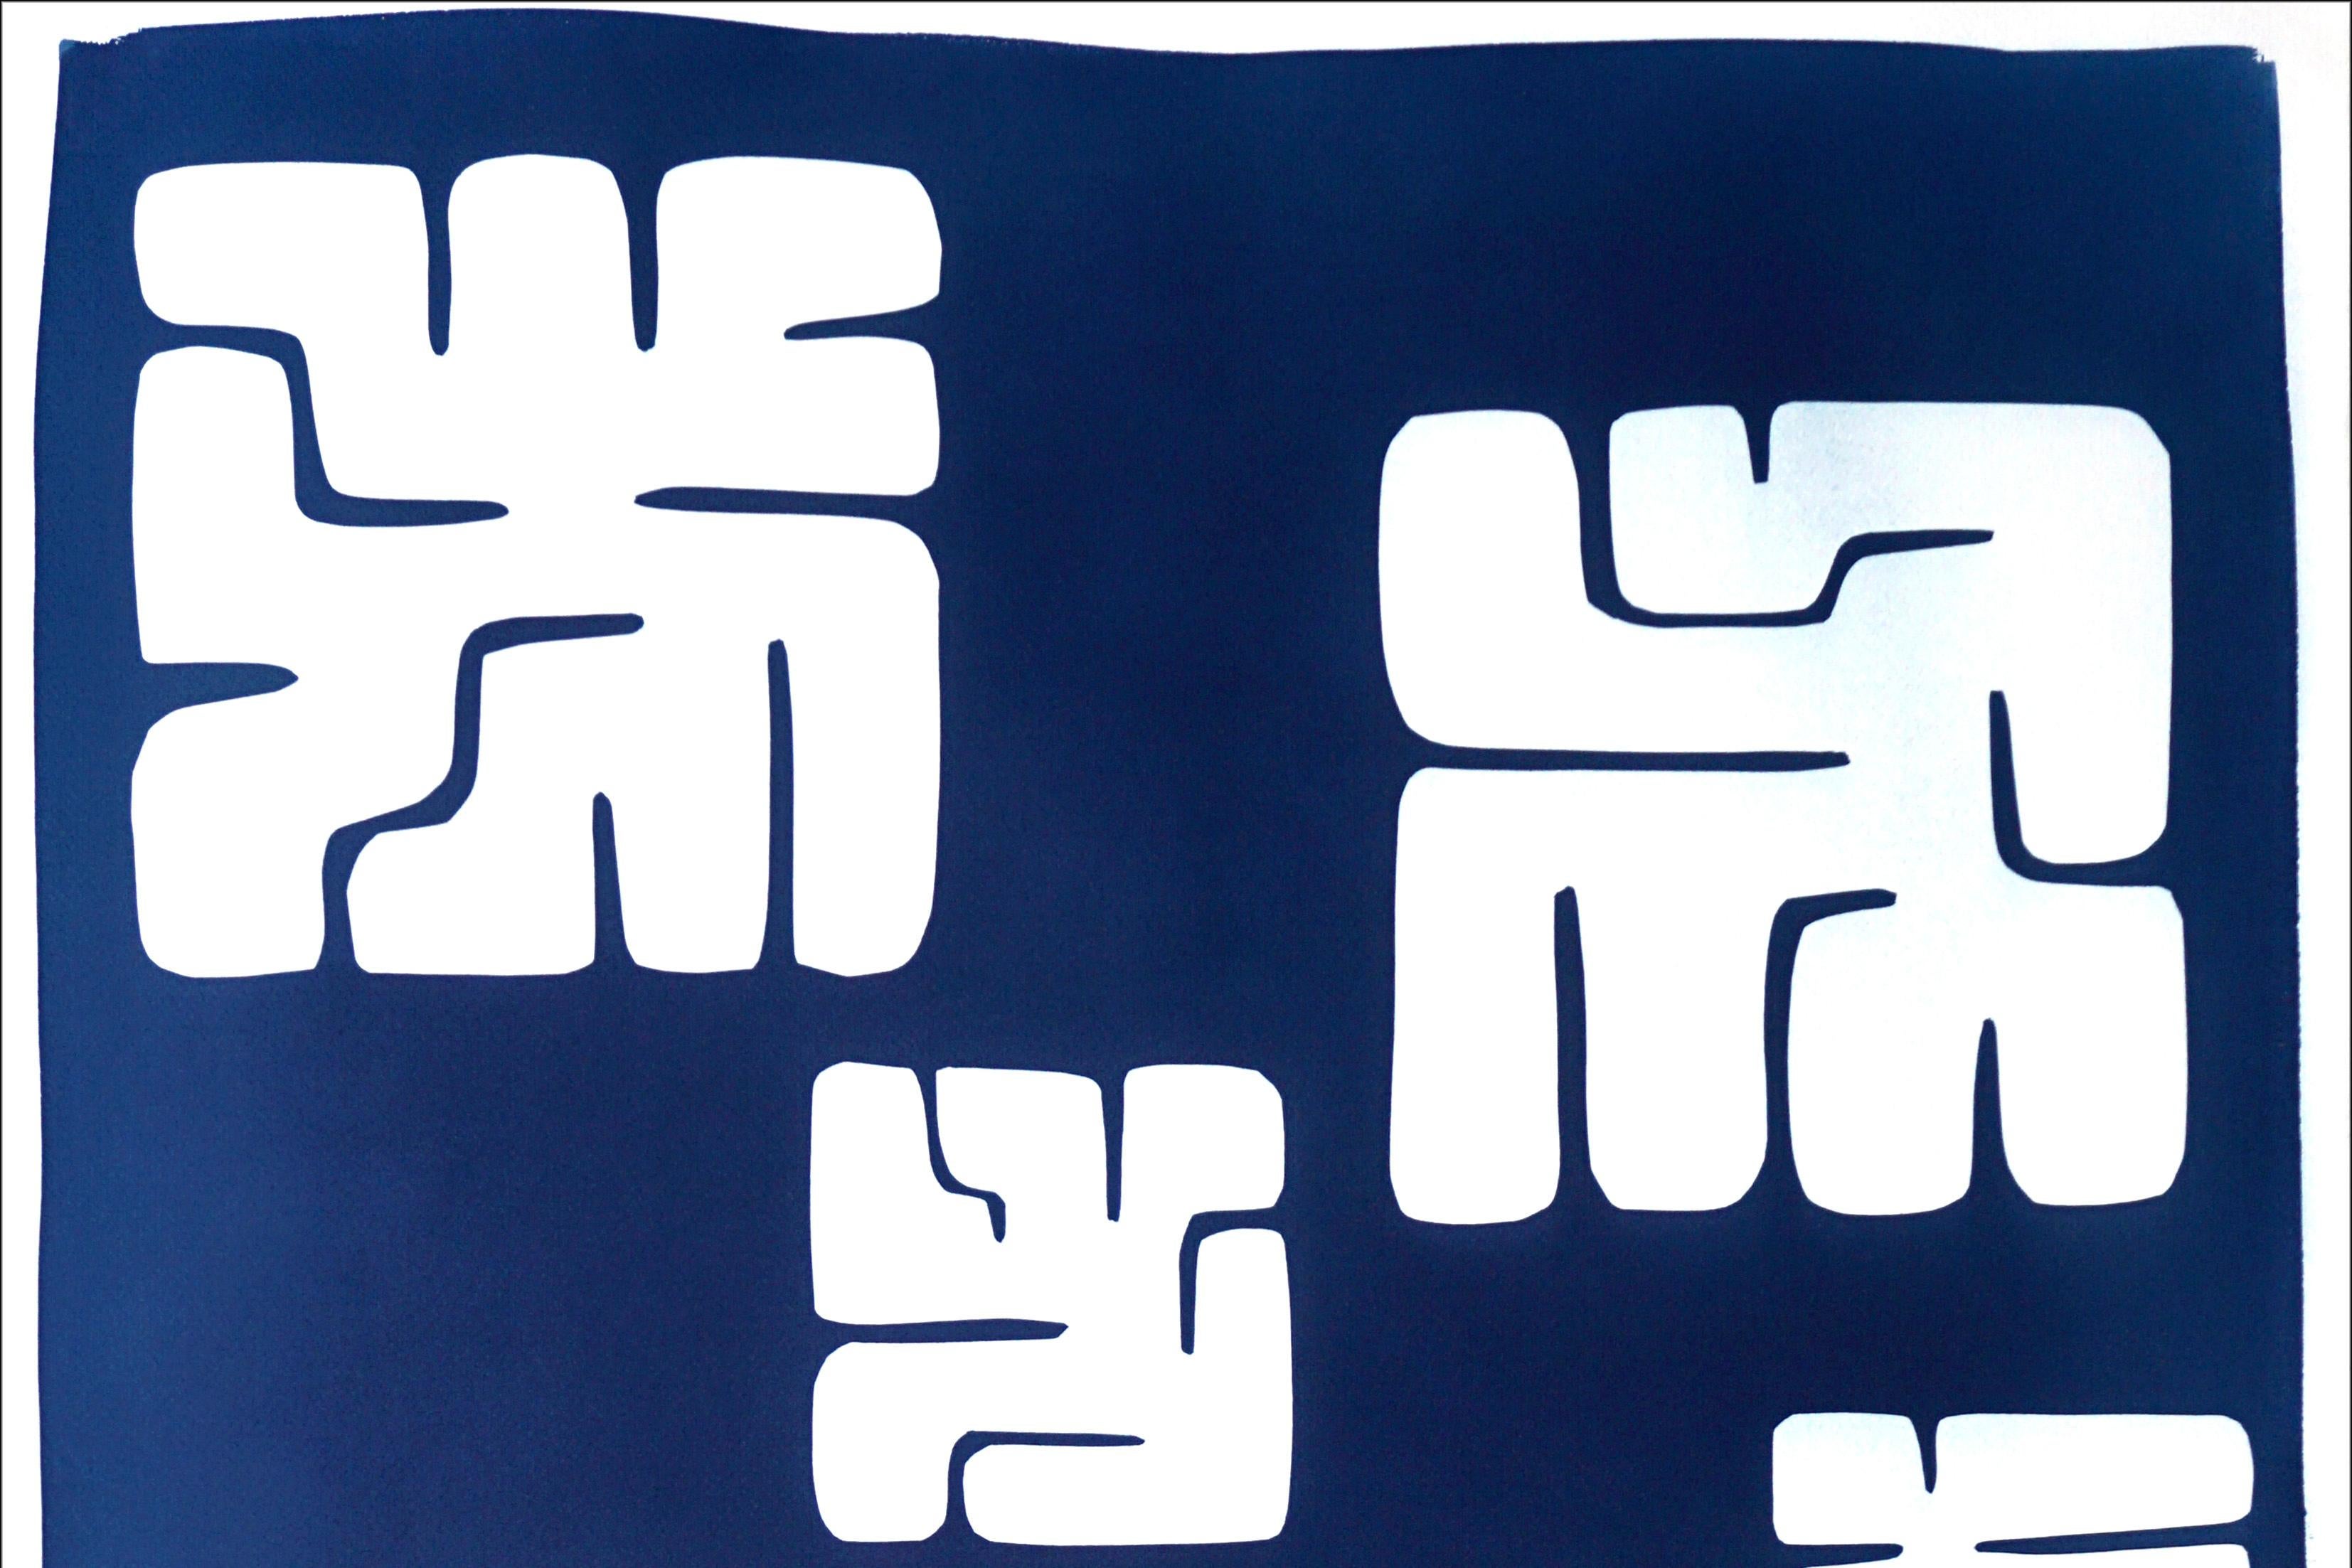 Monotype unique sur papier en bleu profond, figures de blocs mayas de style Nazca, 2021  - Violet Abstract Print par Kind of Cyan